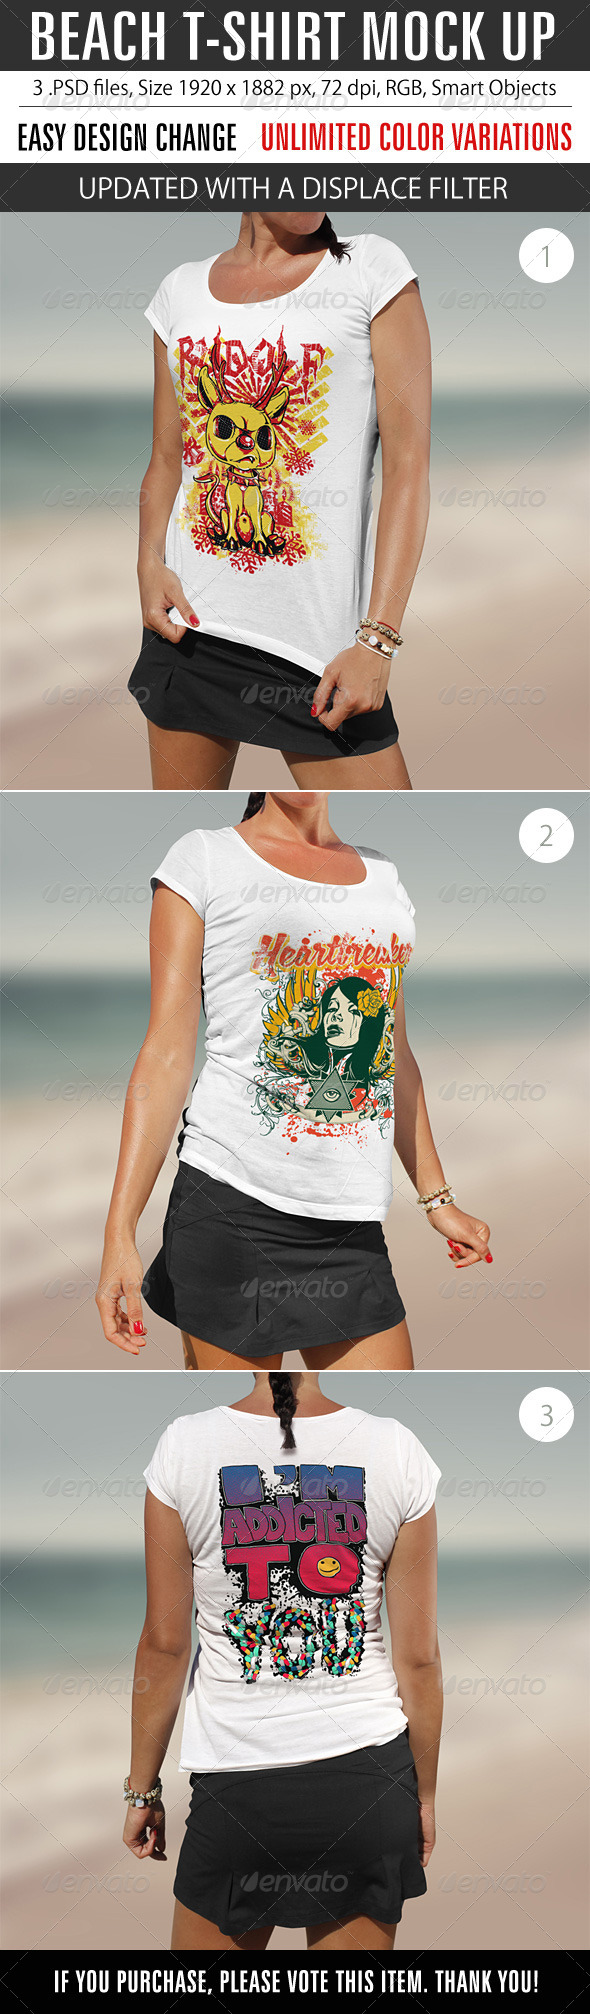 Beach T-Shirt Mock Up